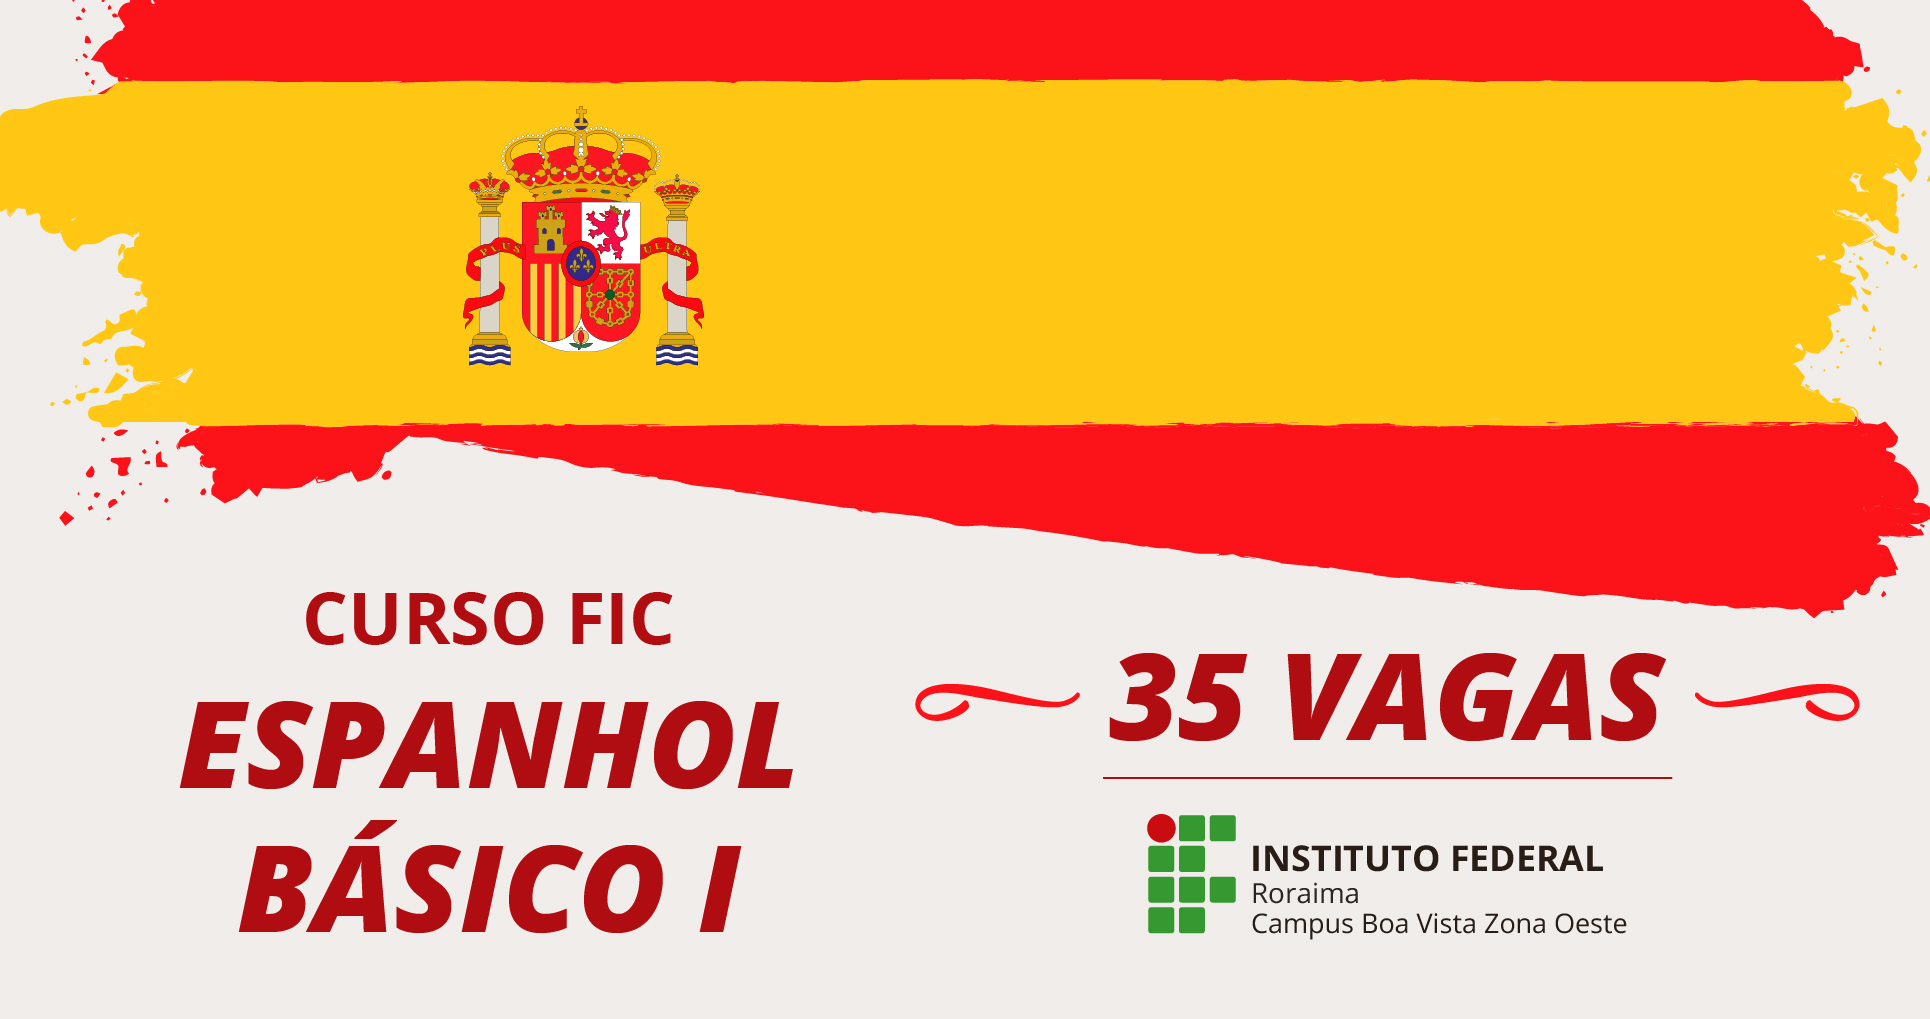  CBVZO – Aula inagural do curso FIC em espanhol será na próxima quarta-feira, 10